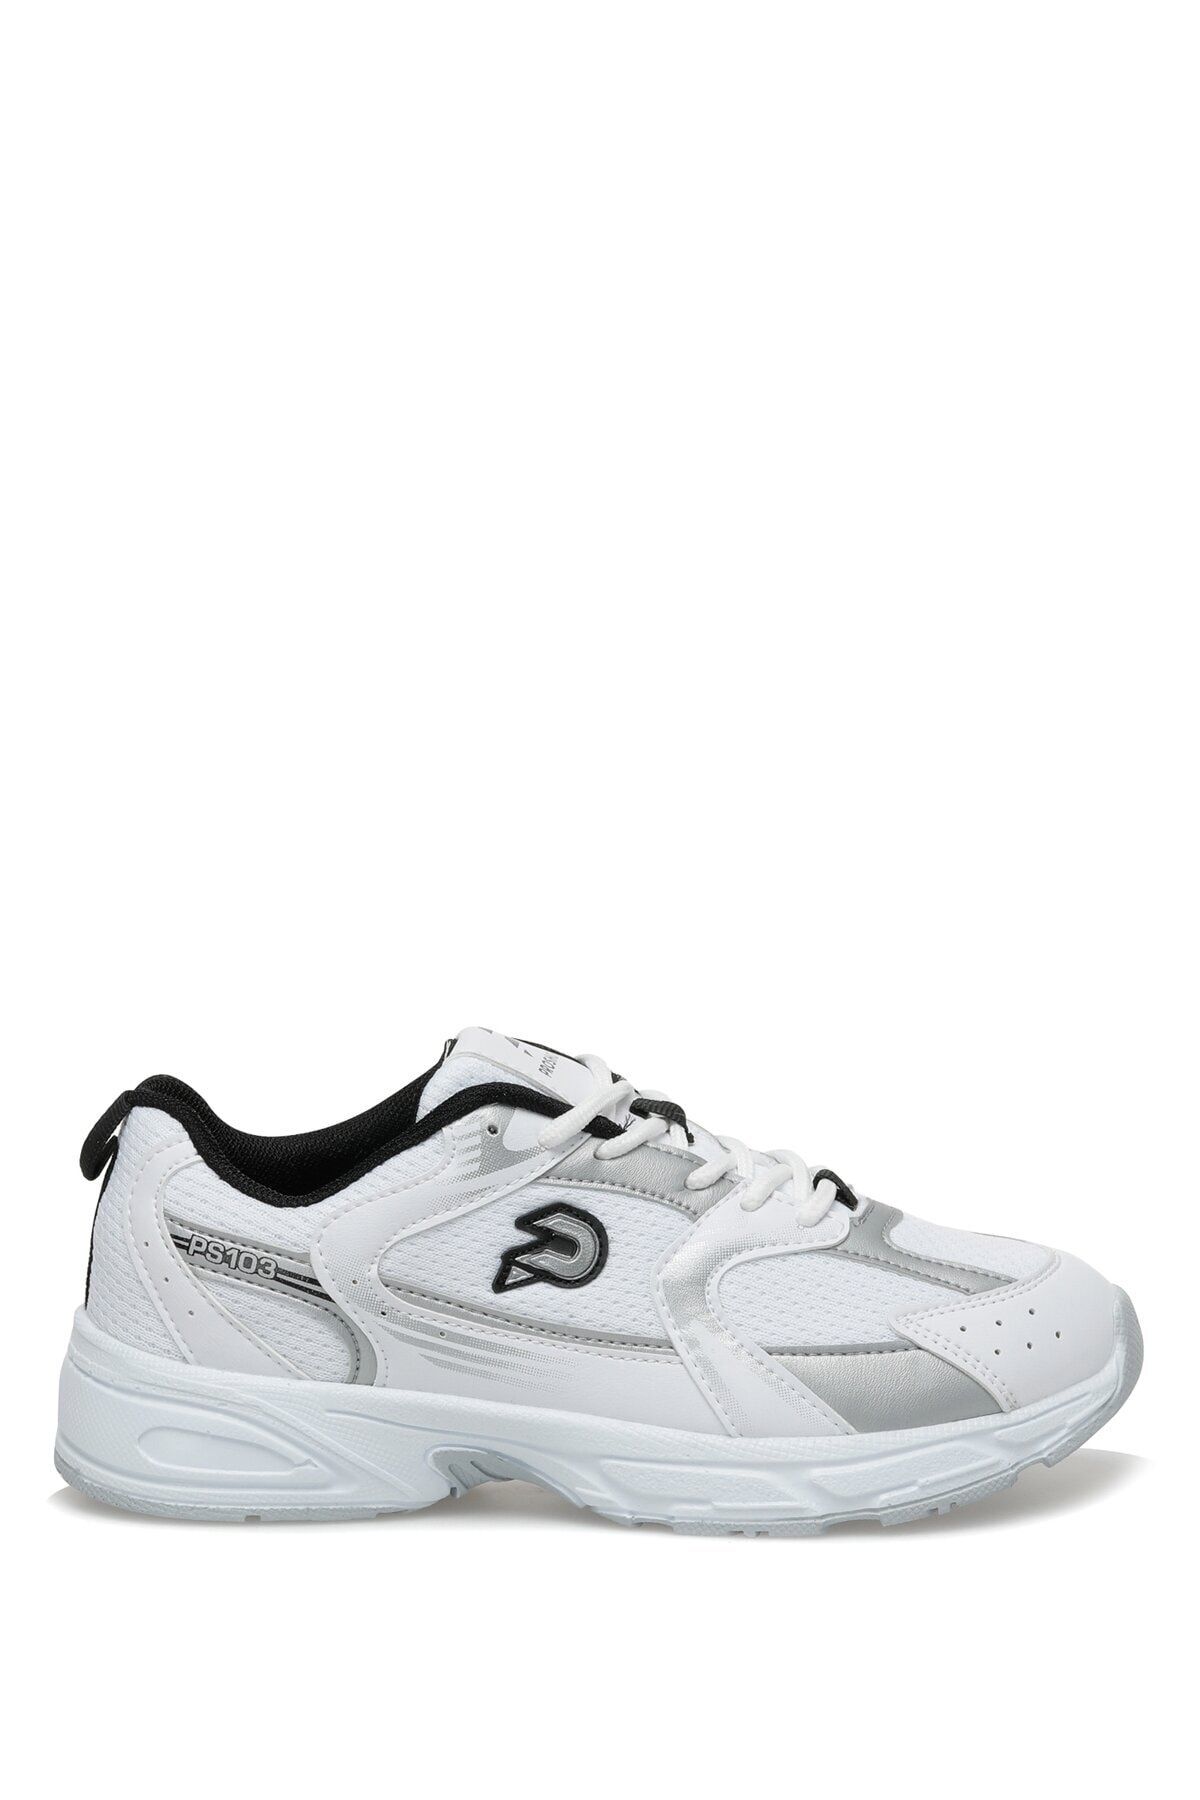 Proshot Ps103 3fx Beyaz Erkek Koşu Ayakkabısı